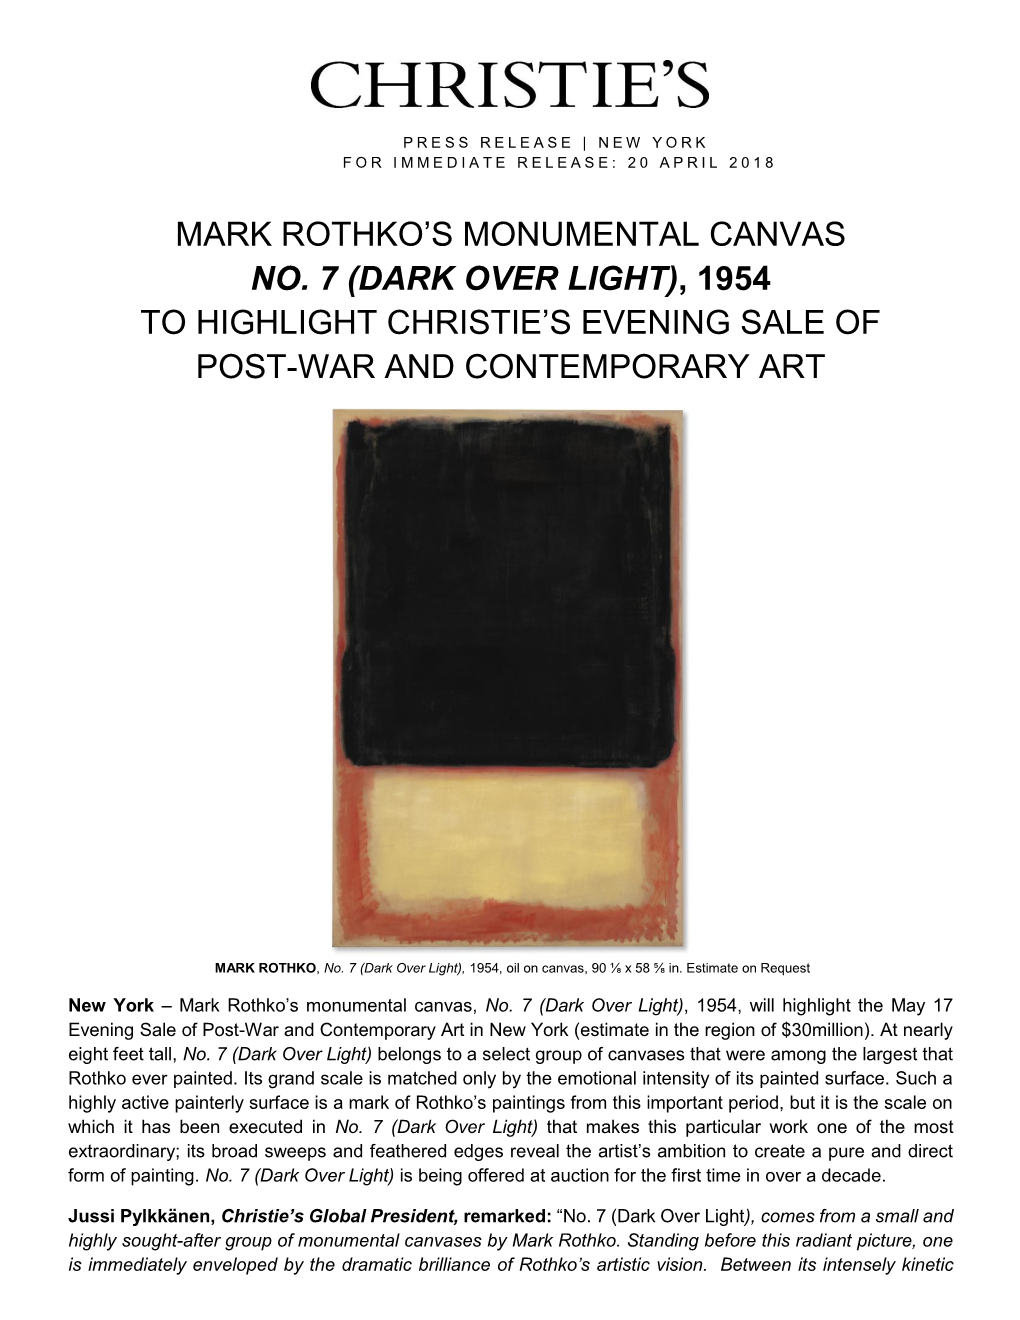 Mark Rothko's Monumental Canvas No. 7